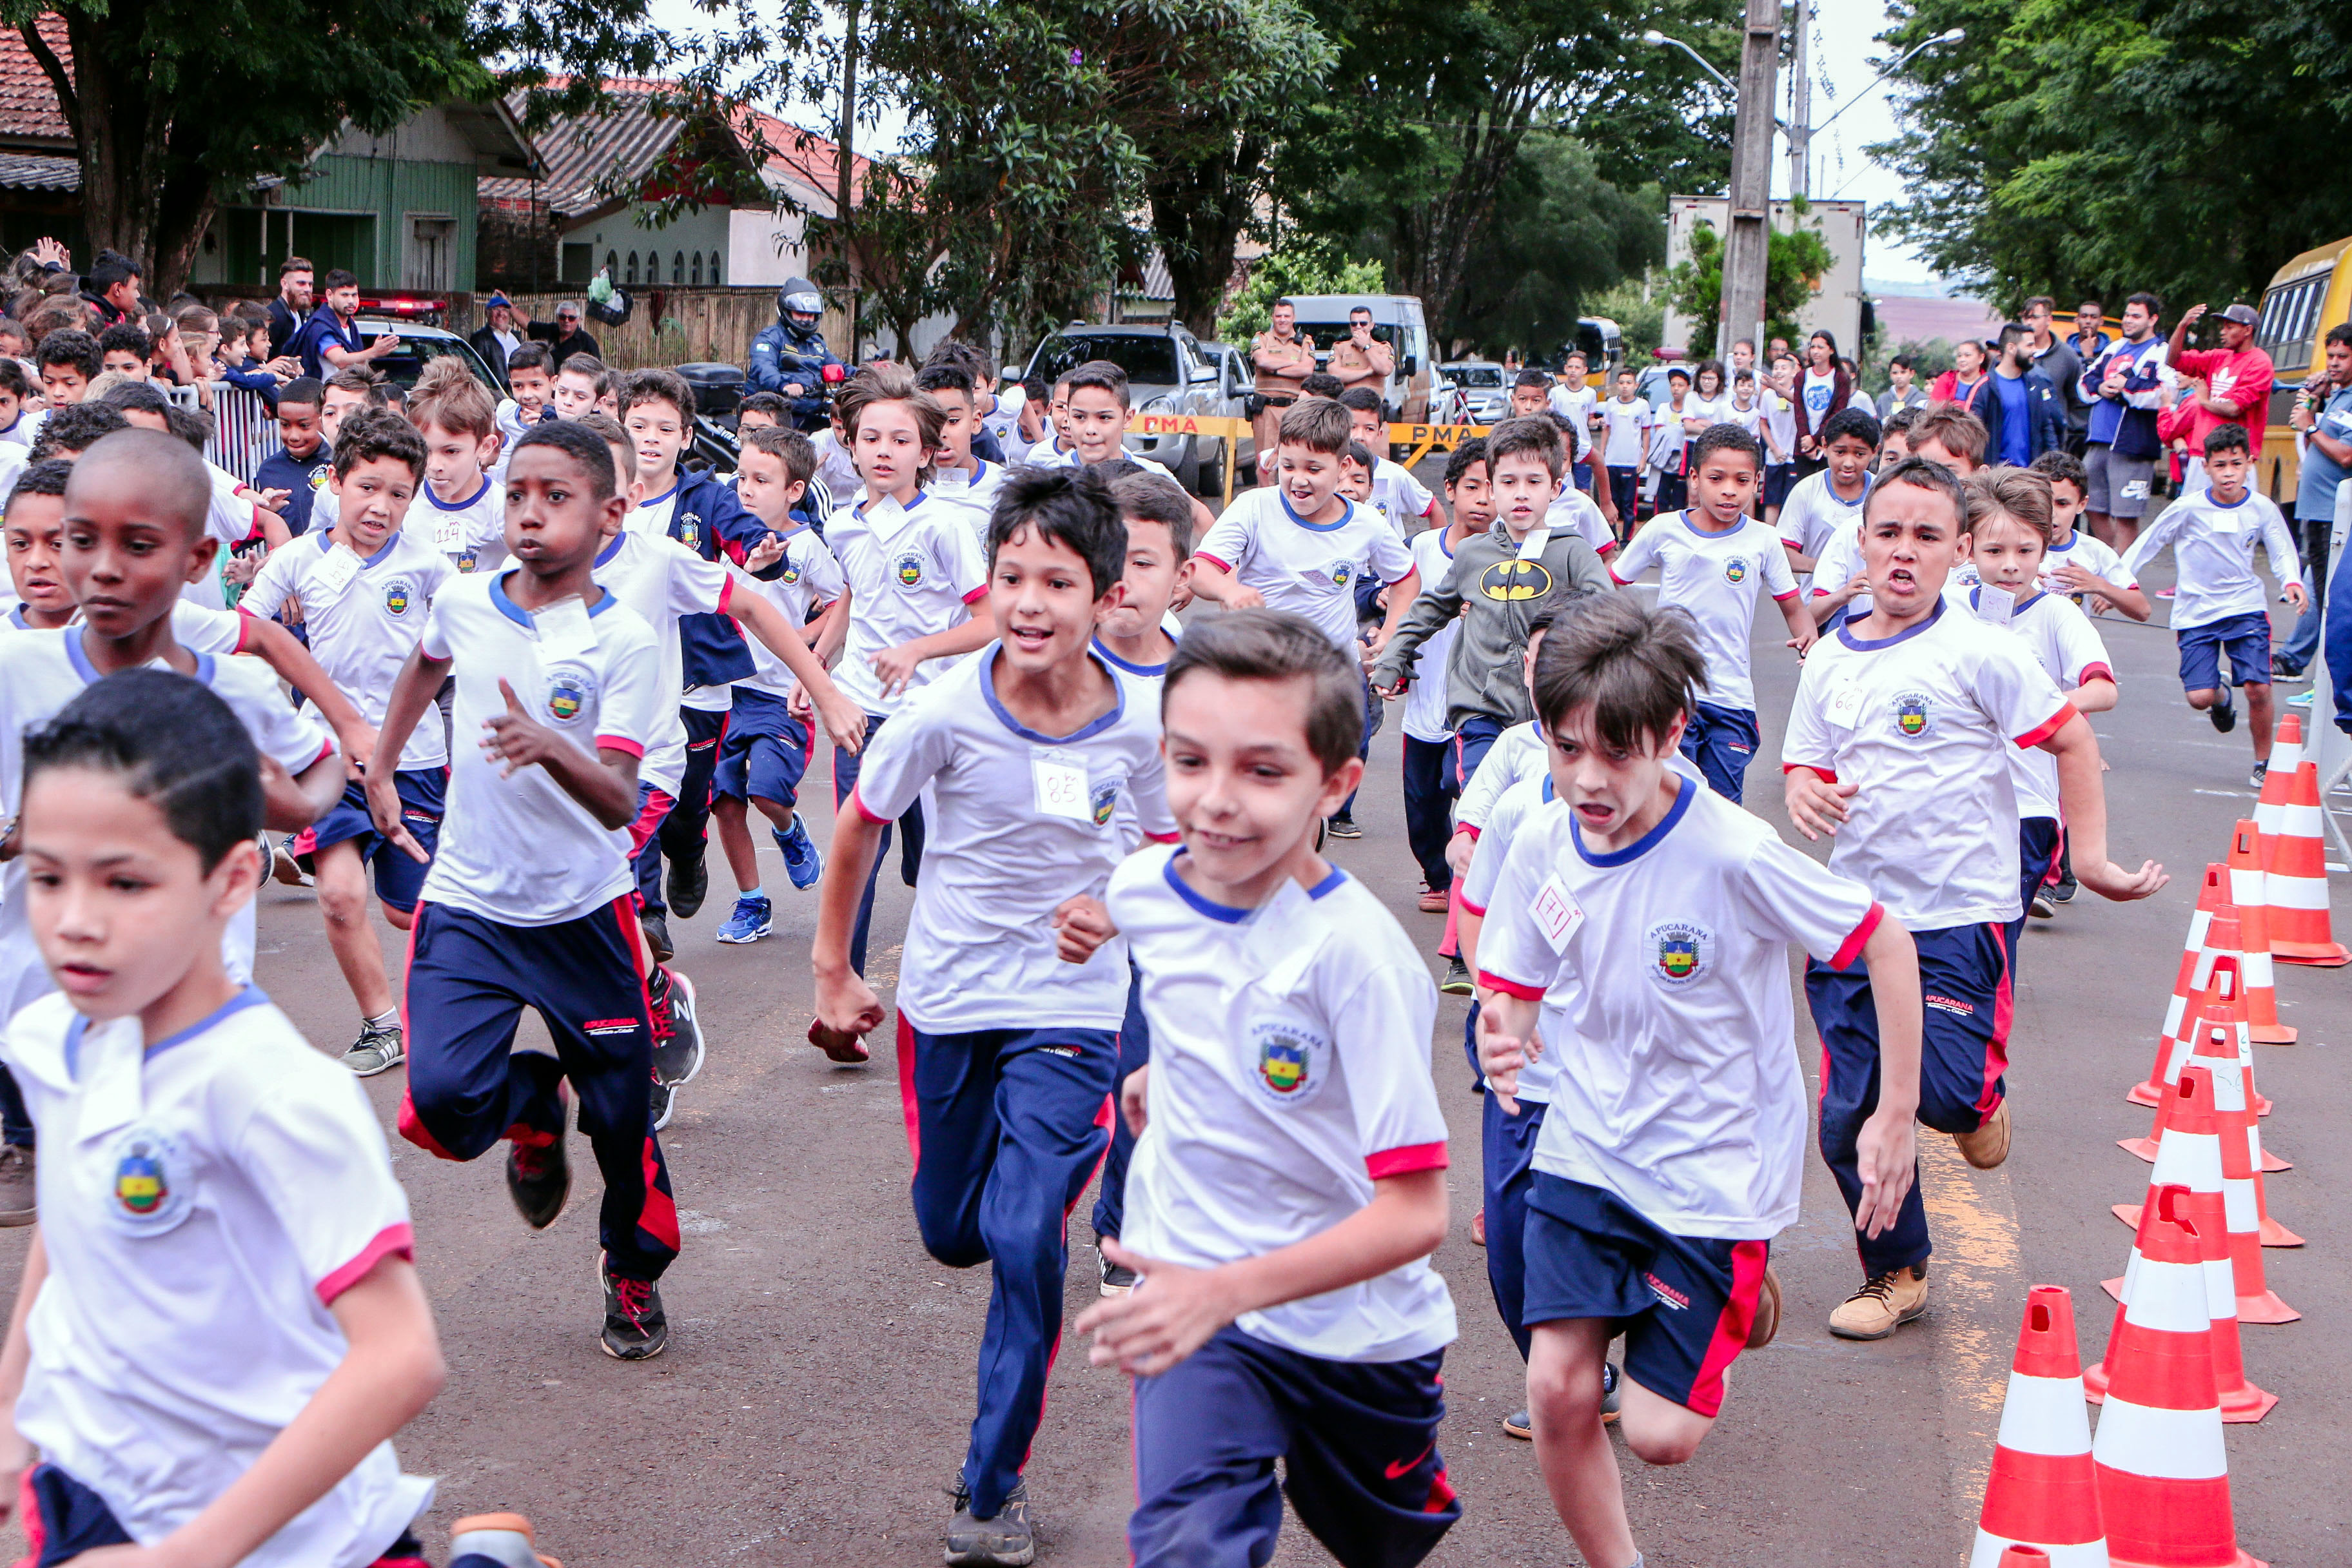 Corrida de rua mobiliza mais de 600 crianças